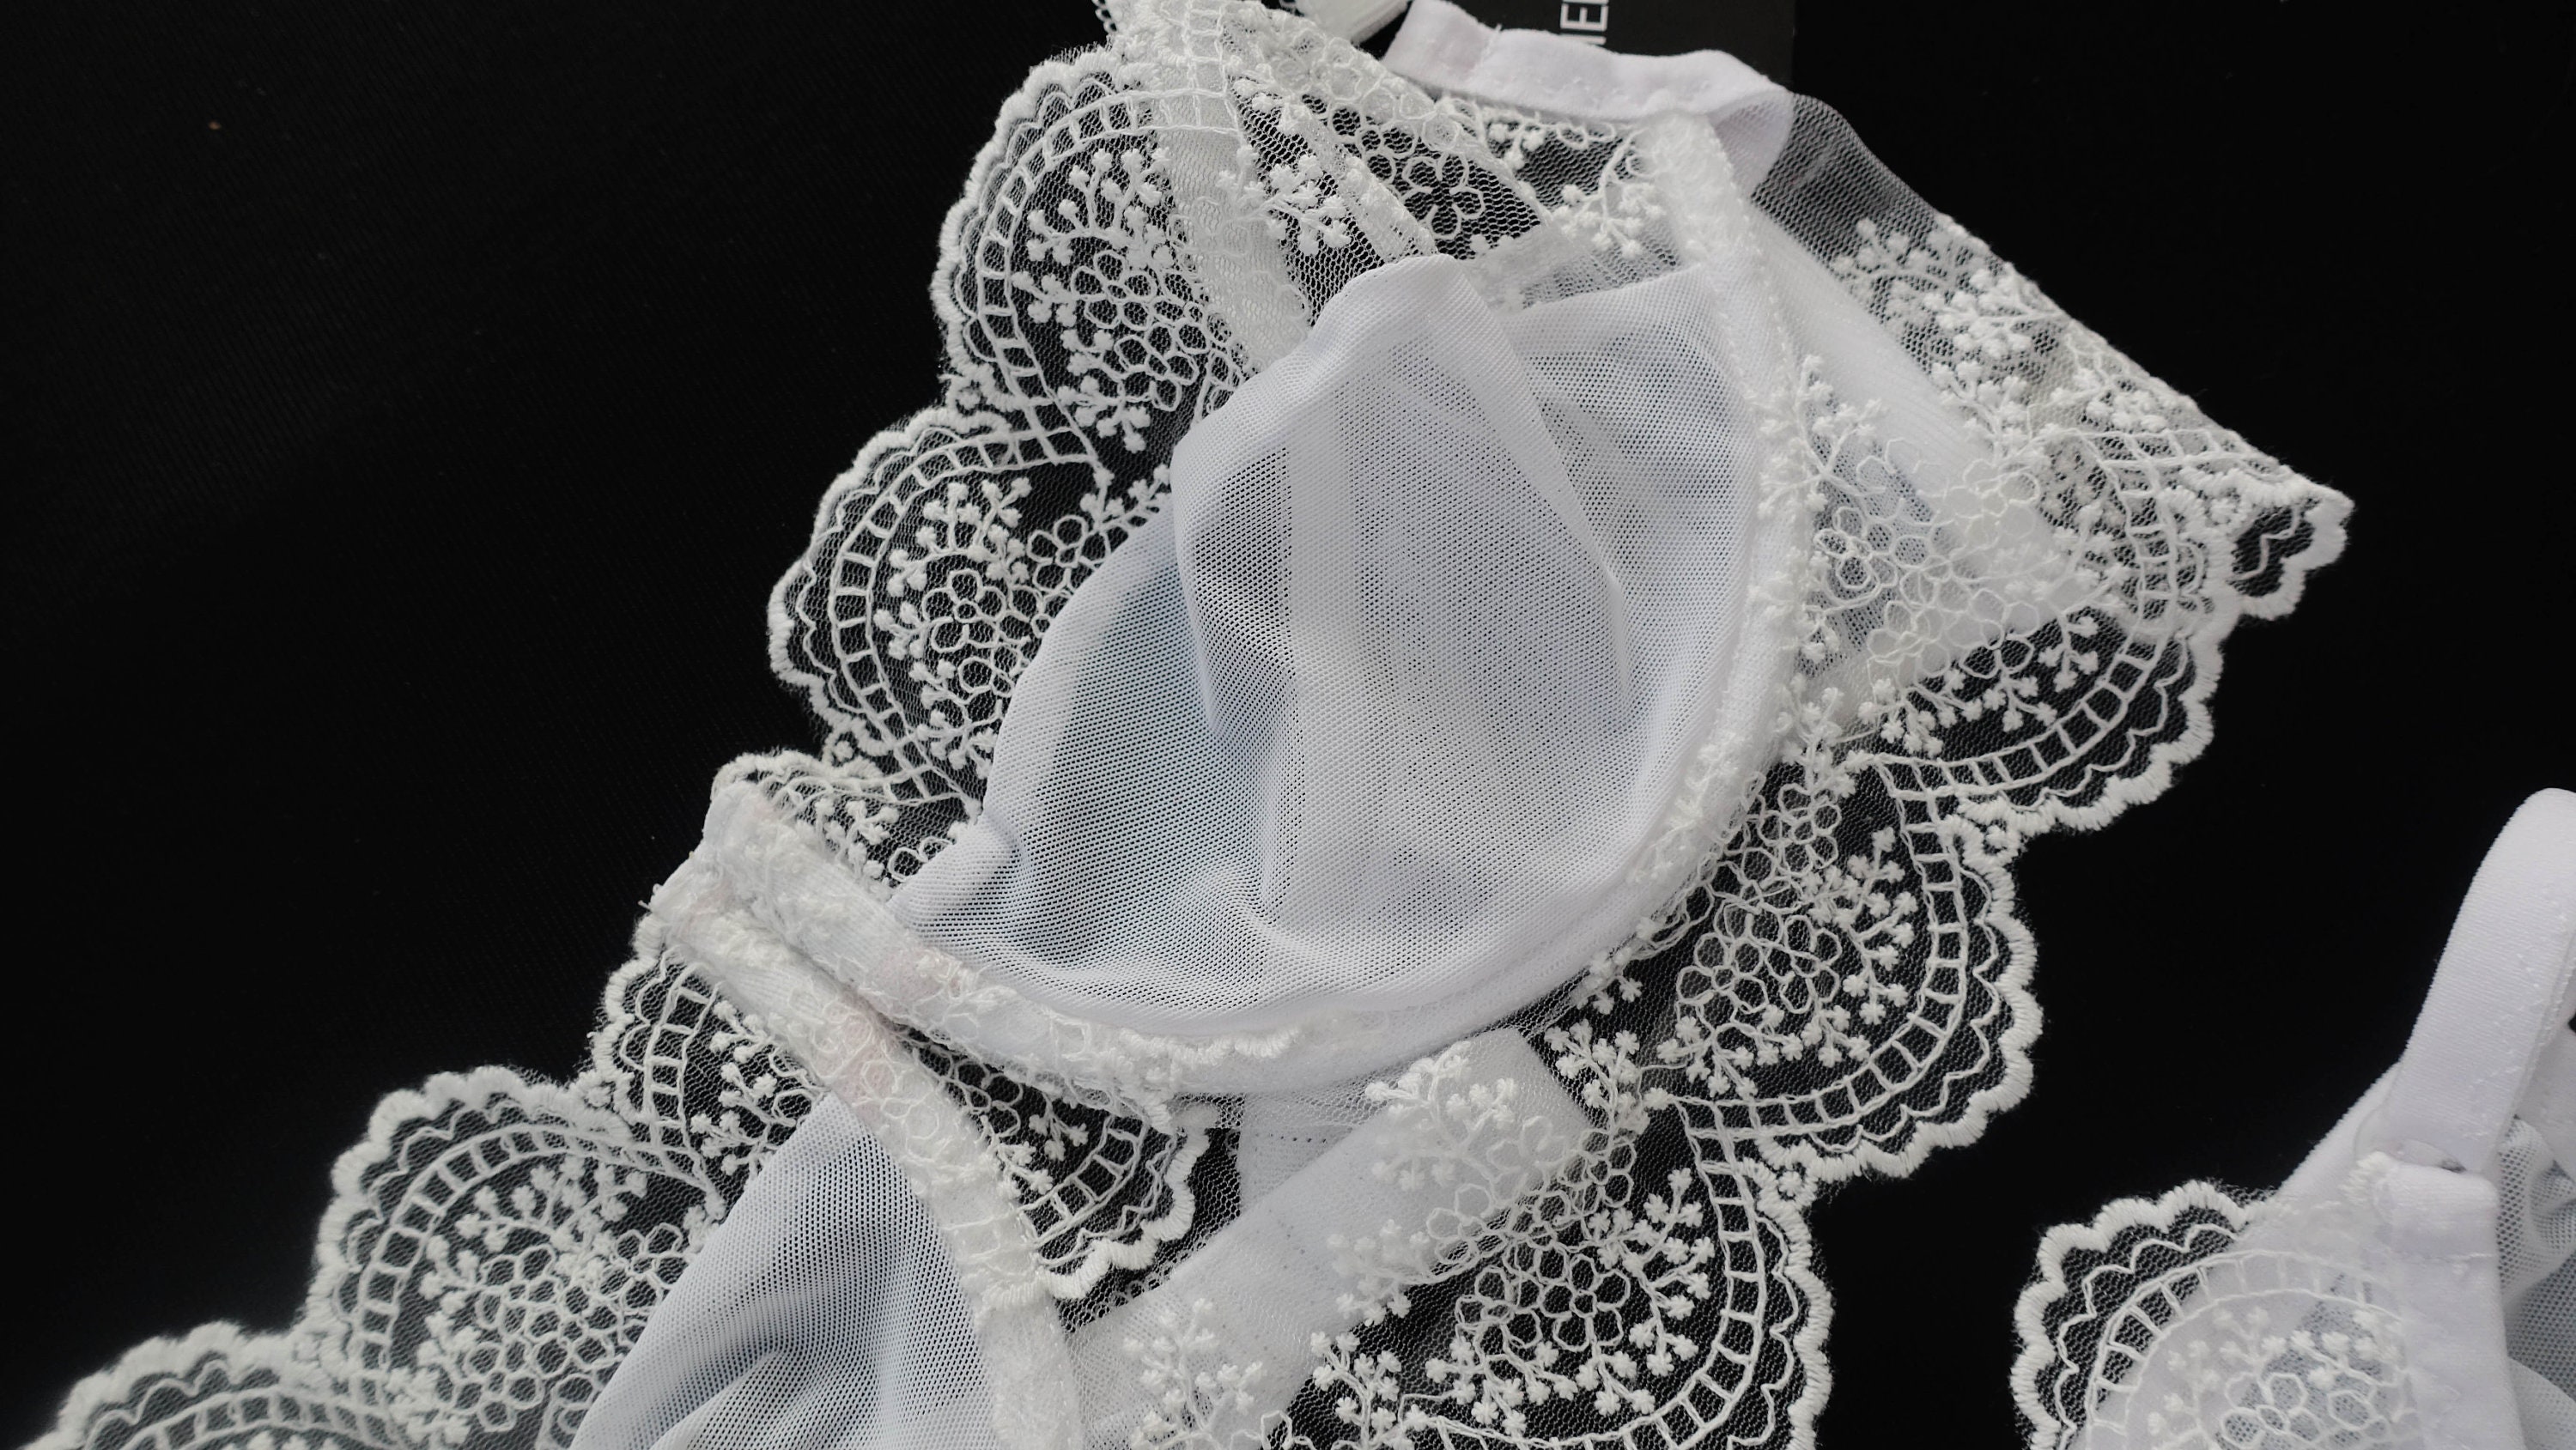 Bridal lingerie / wedding lingerie / lingerie gift | Etsy